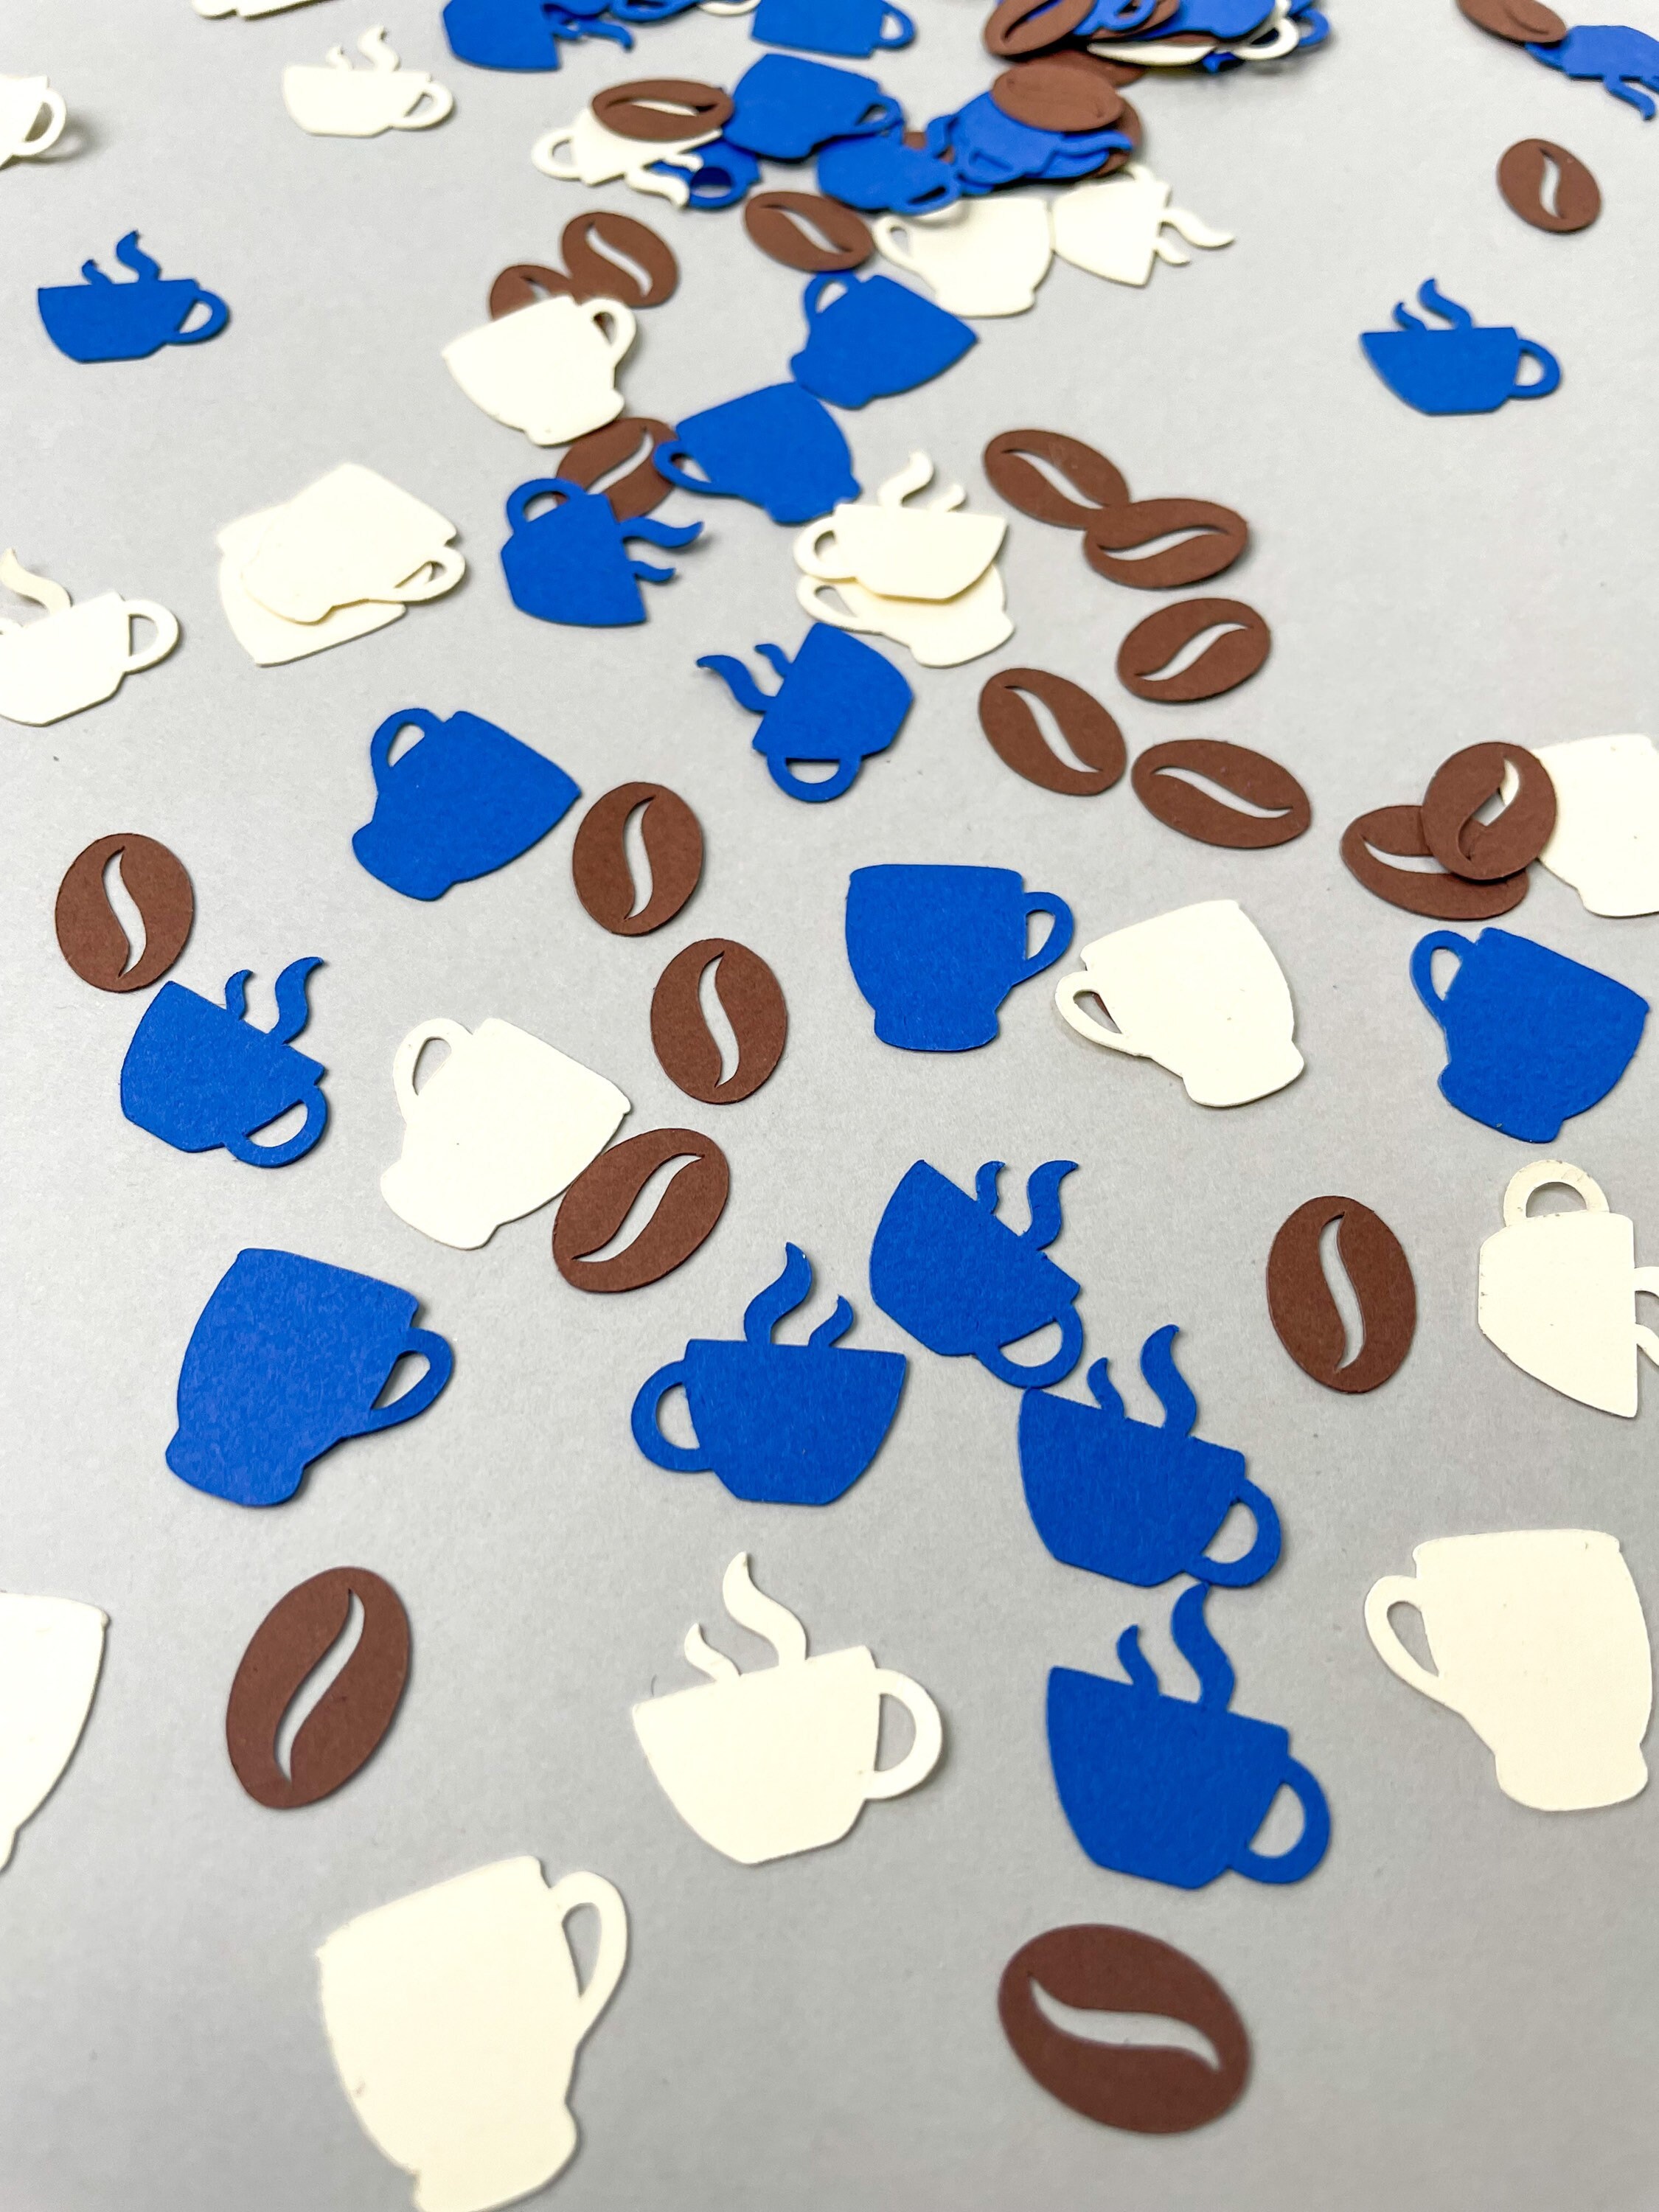 Confetti Print Coffee Tumbler